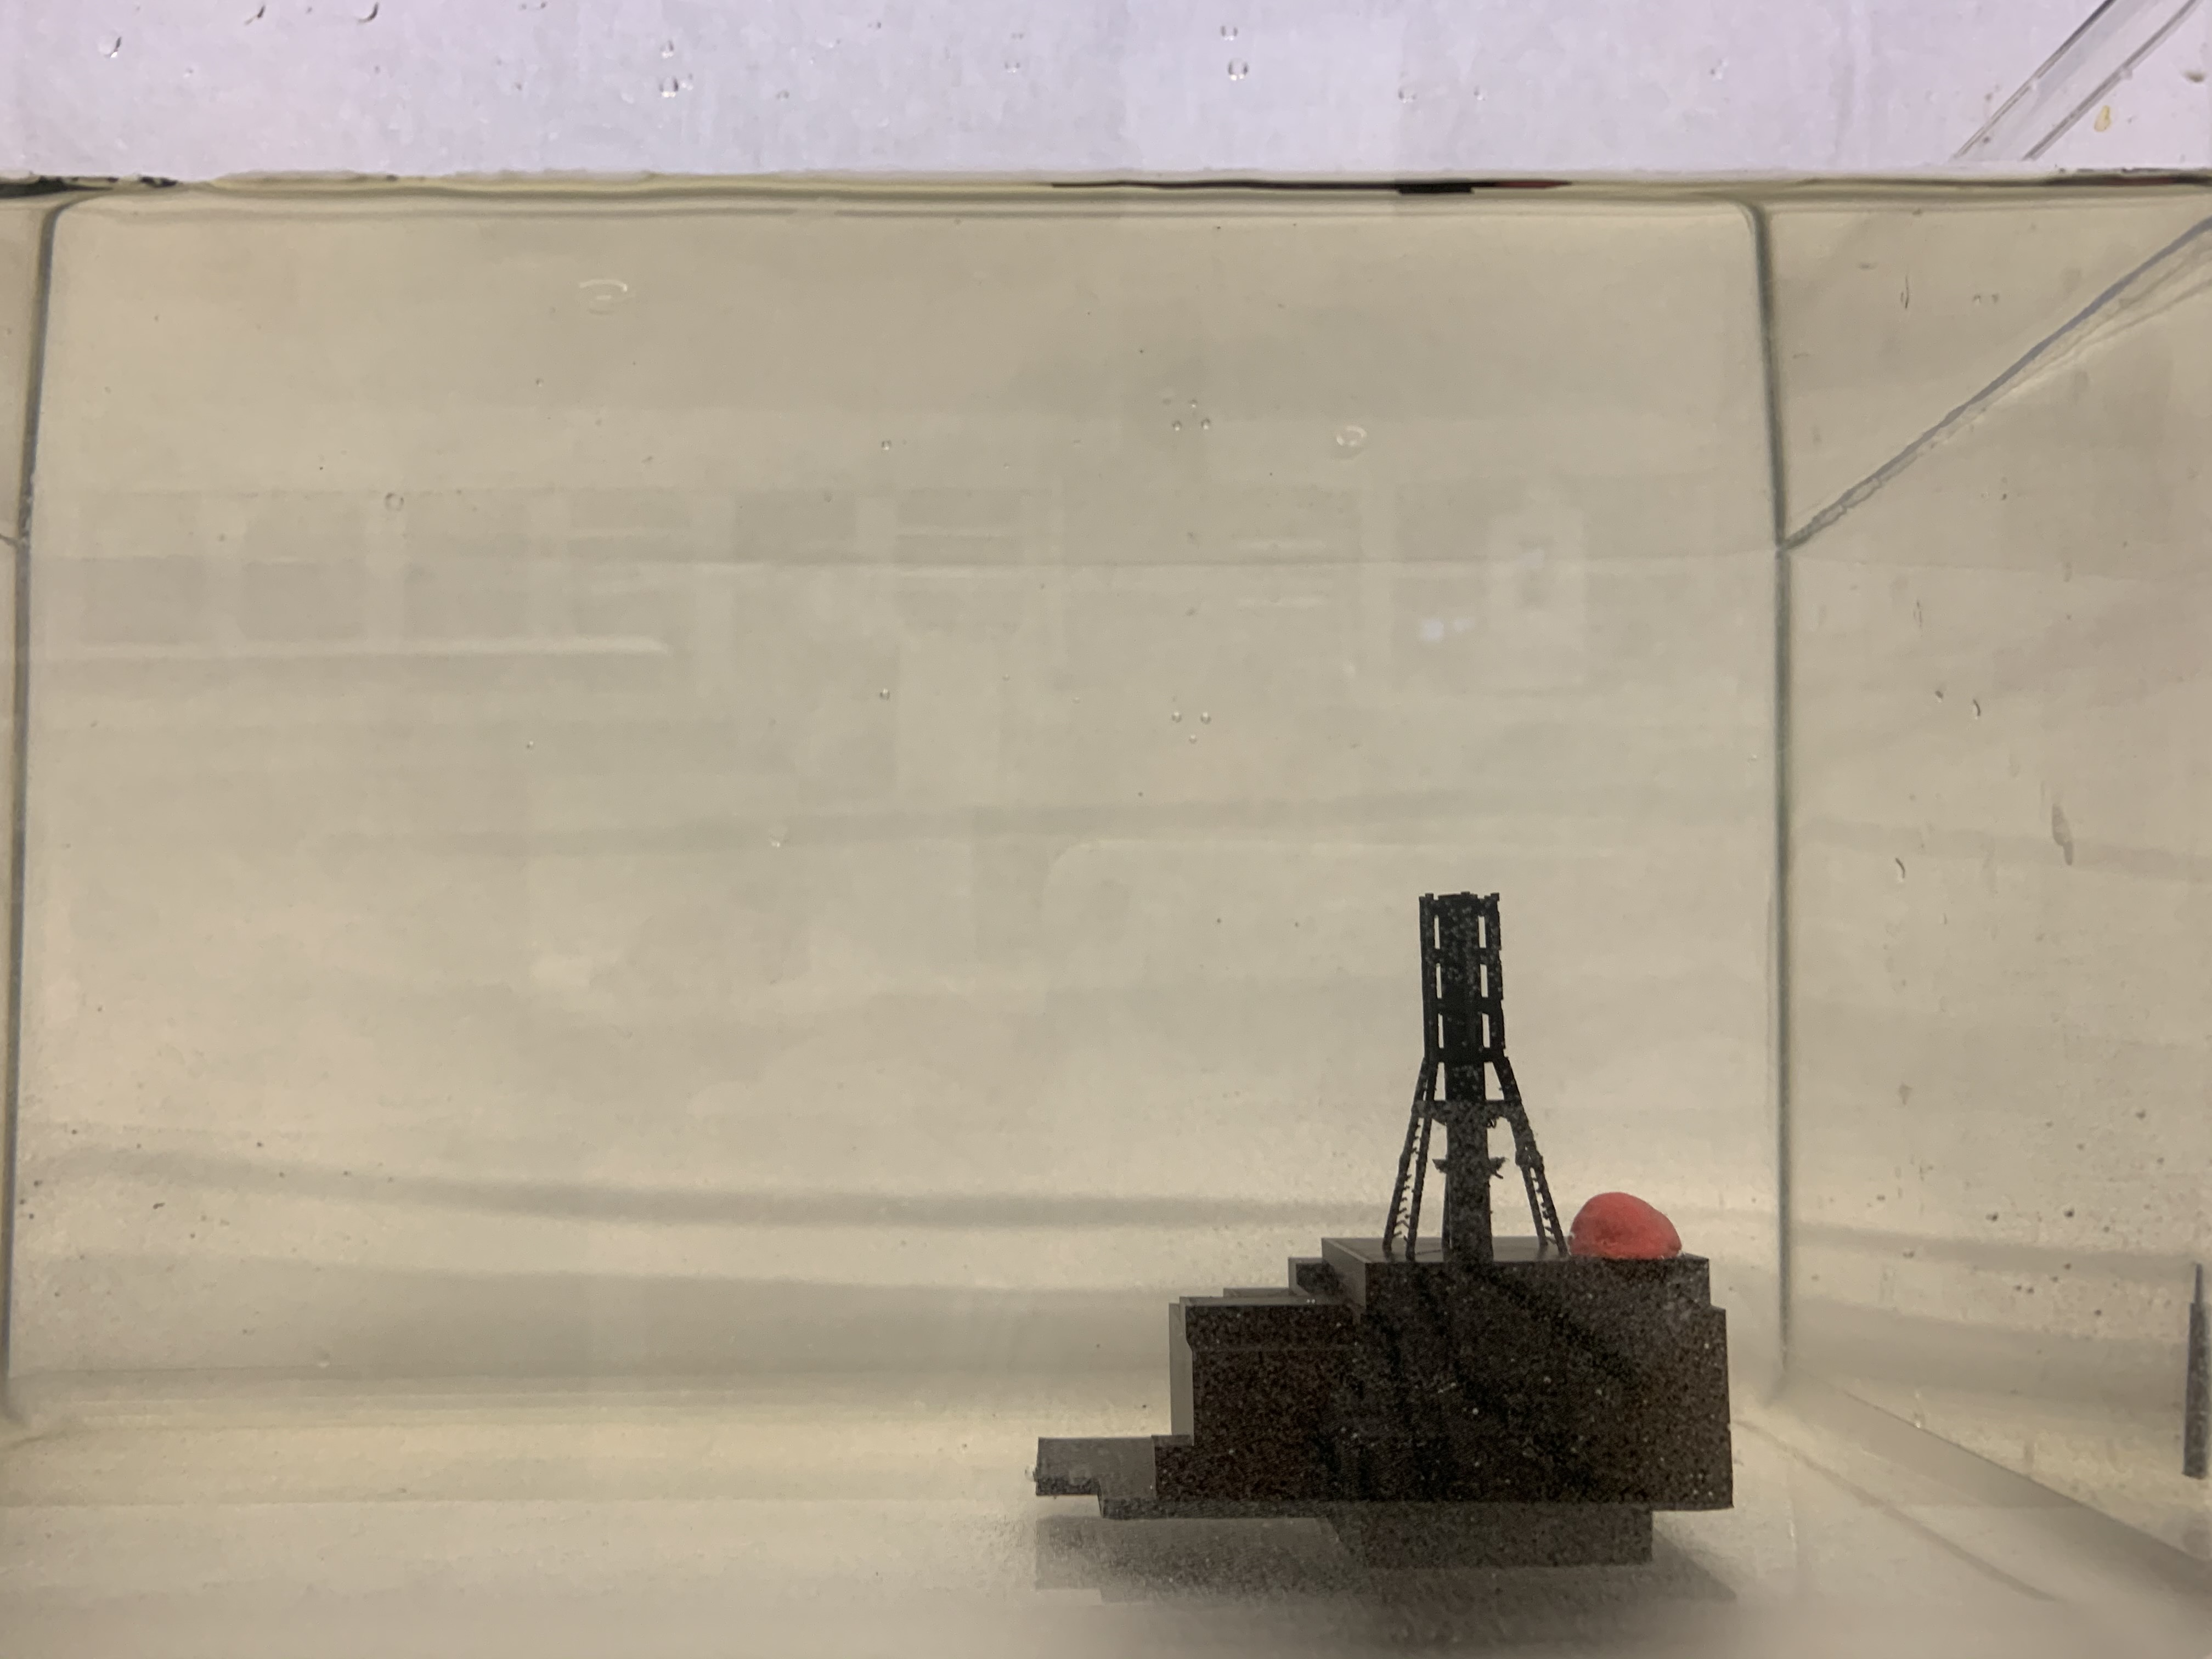 In der Abbildung ist der Aufbau des Versuchs zur Ausreitung von ionisierender Strahlung dargestellt. Dazu wird ein 3D-Modell des Kernkraftwerks Tschernobyl verwendet.